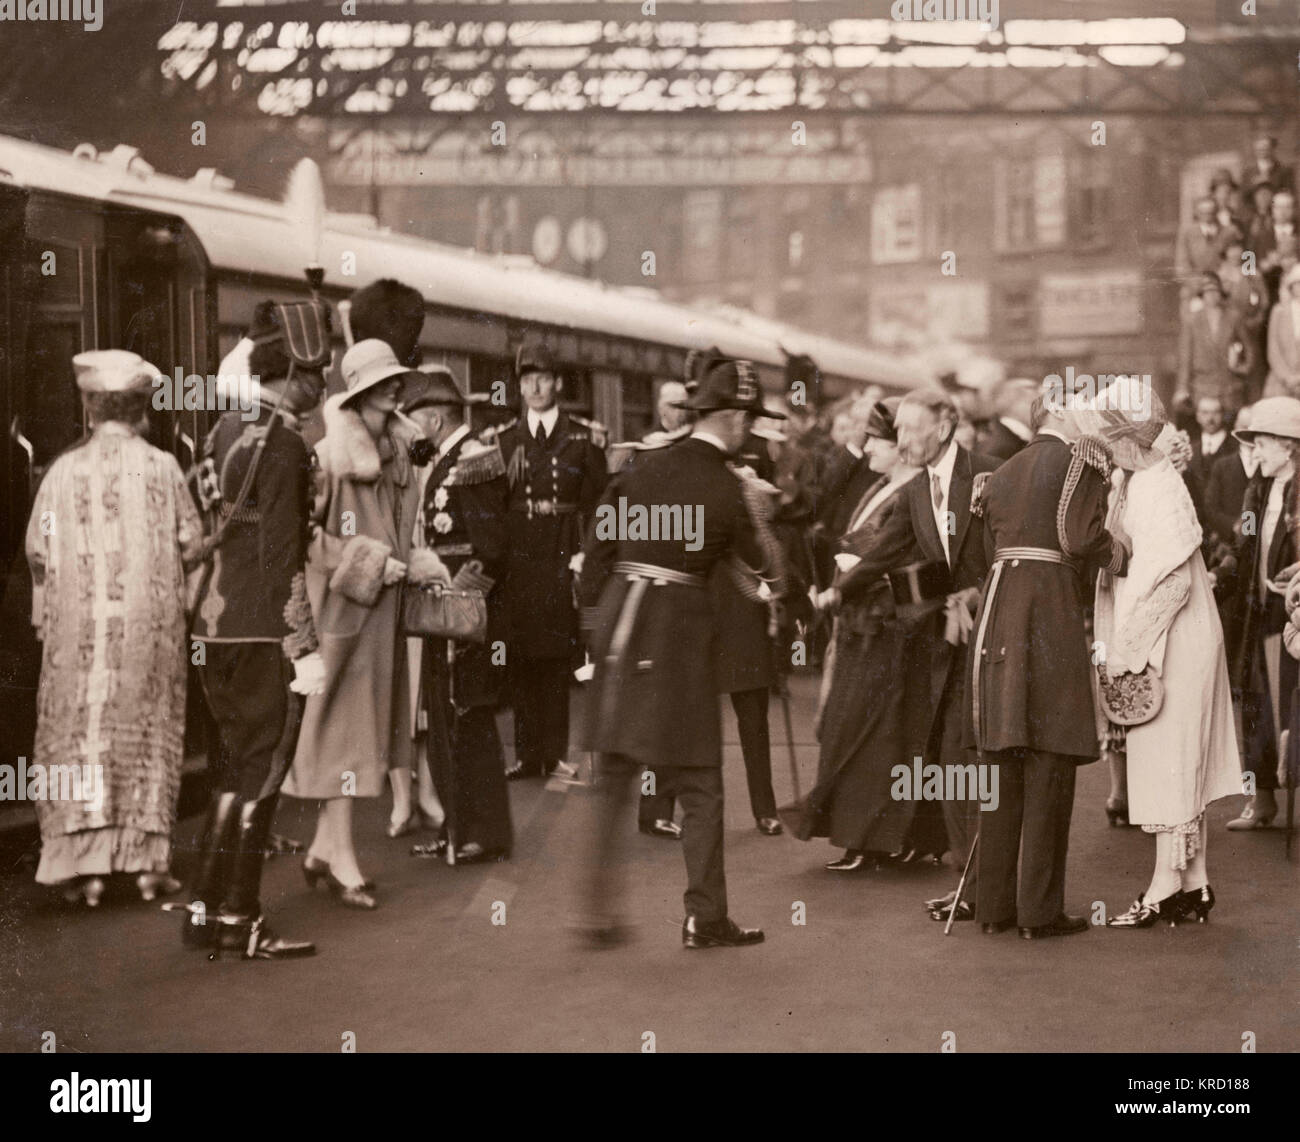 Der Herzog und die Herzogin von York (später König Georg VI. und Königin Elizabeth) kommen nach Hause mit dem Zug bis Victoria Station und werden von der Familie Mitglieder begrüßt. Der Herzog von York können in Uniform auf der rechten Seite gesehen werden, Gruß Prinzessin Mary. Datum: ca. 1927 Stockfoto